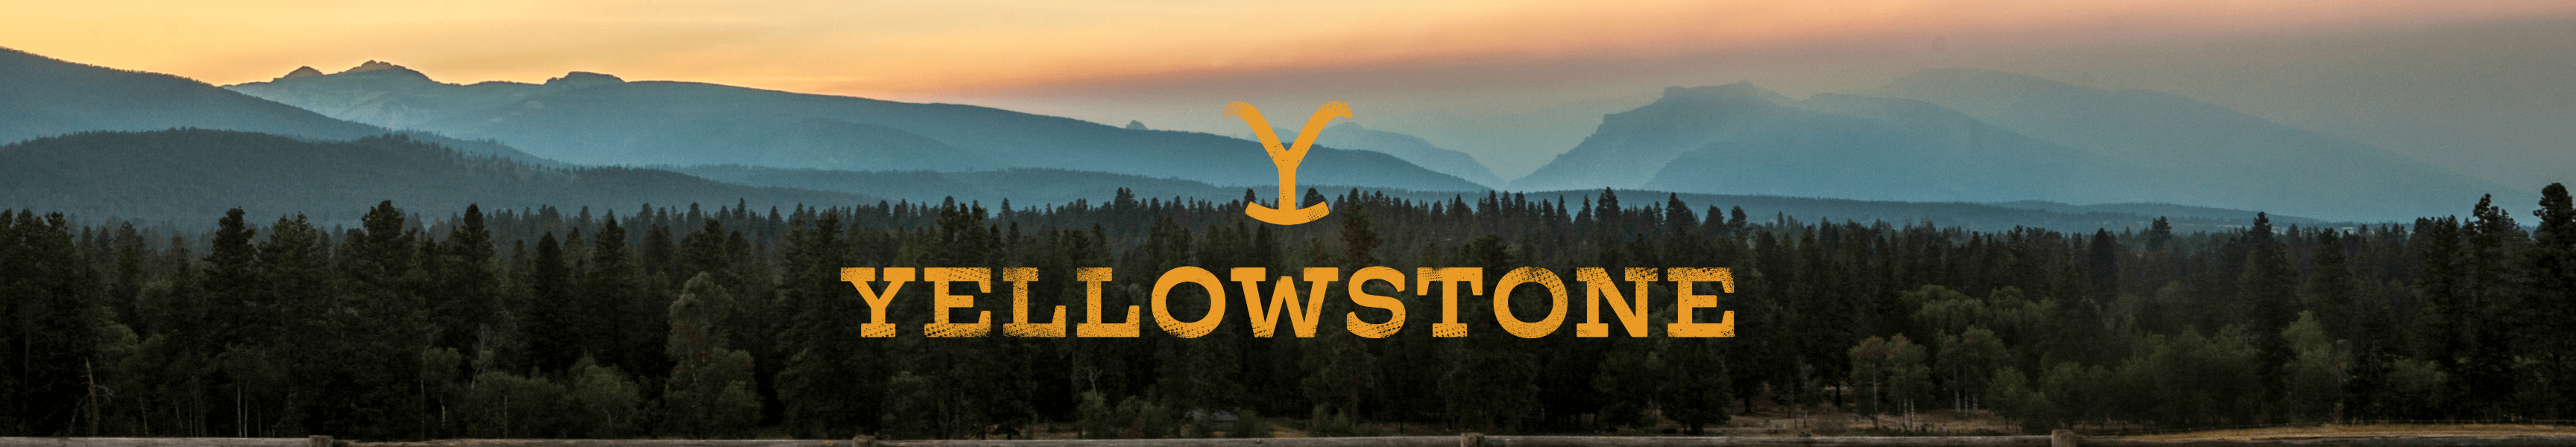 Nuestro regalo para usted: Descuento en Yellowstone Mercancía